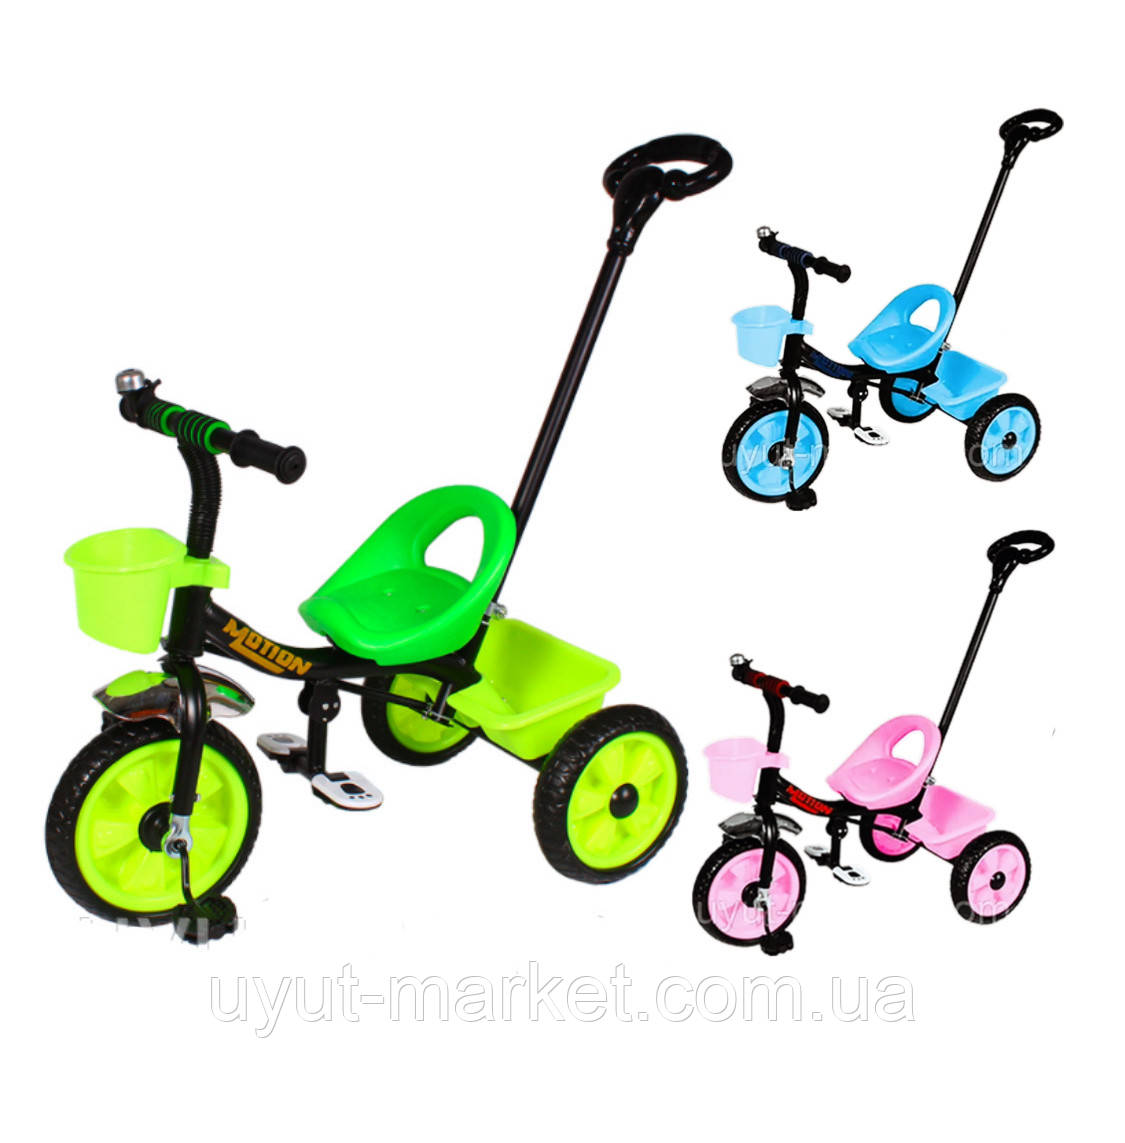 Триколісний дитячий велосипед від 1-2 років TILLY MOTION T-320 з батьківською ручкою